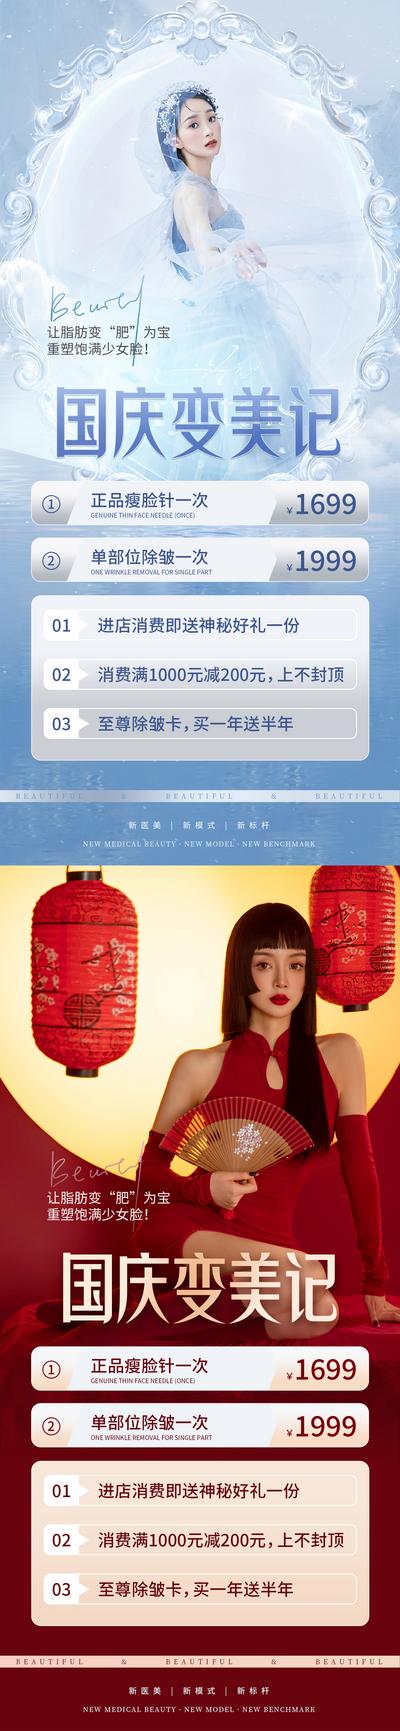 南门网 海报 公历节日 国庆节 73周年 数字 红金 大字报